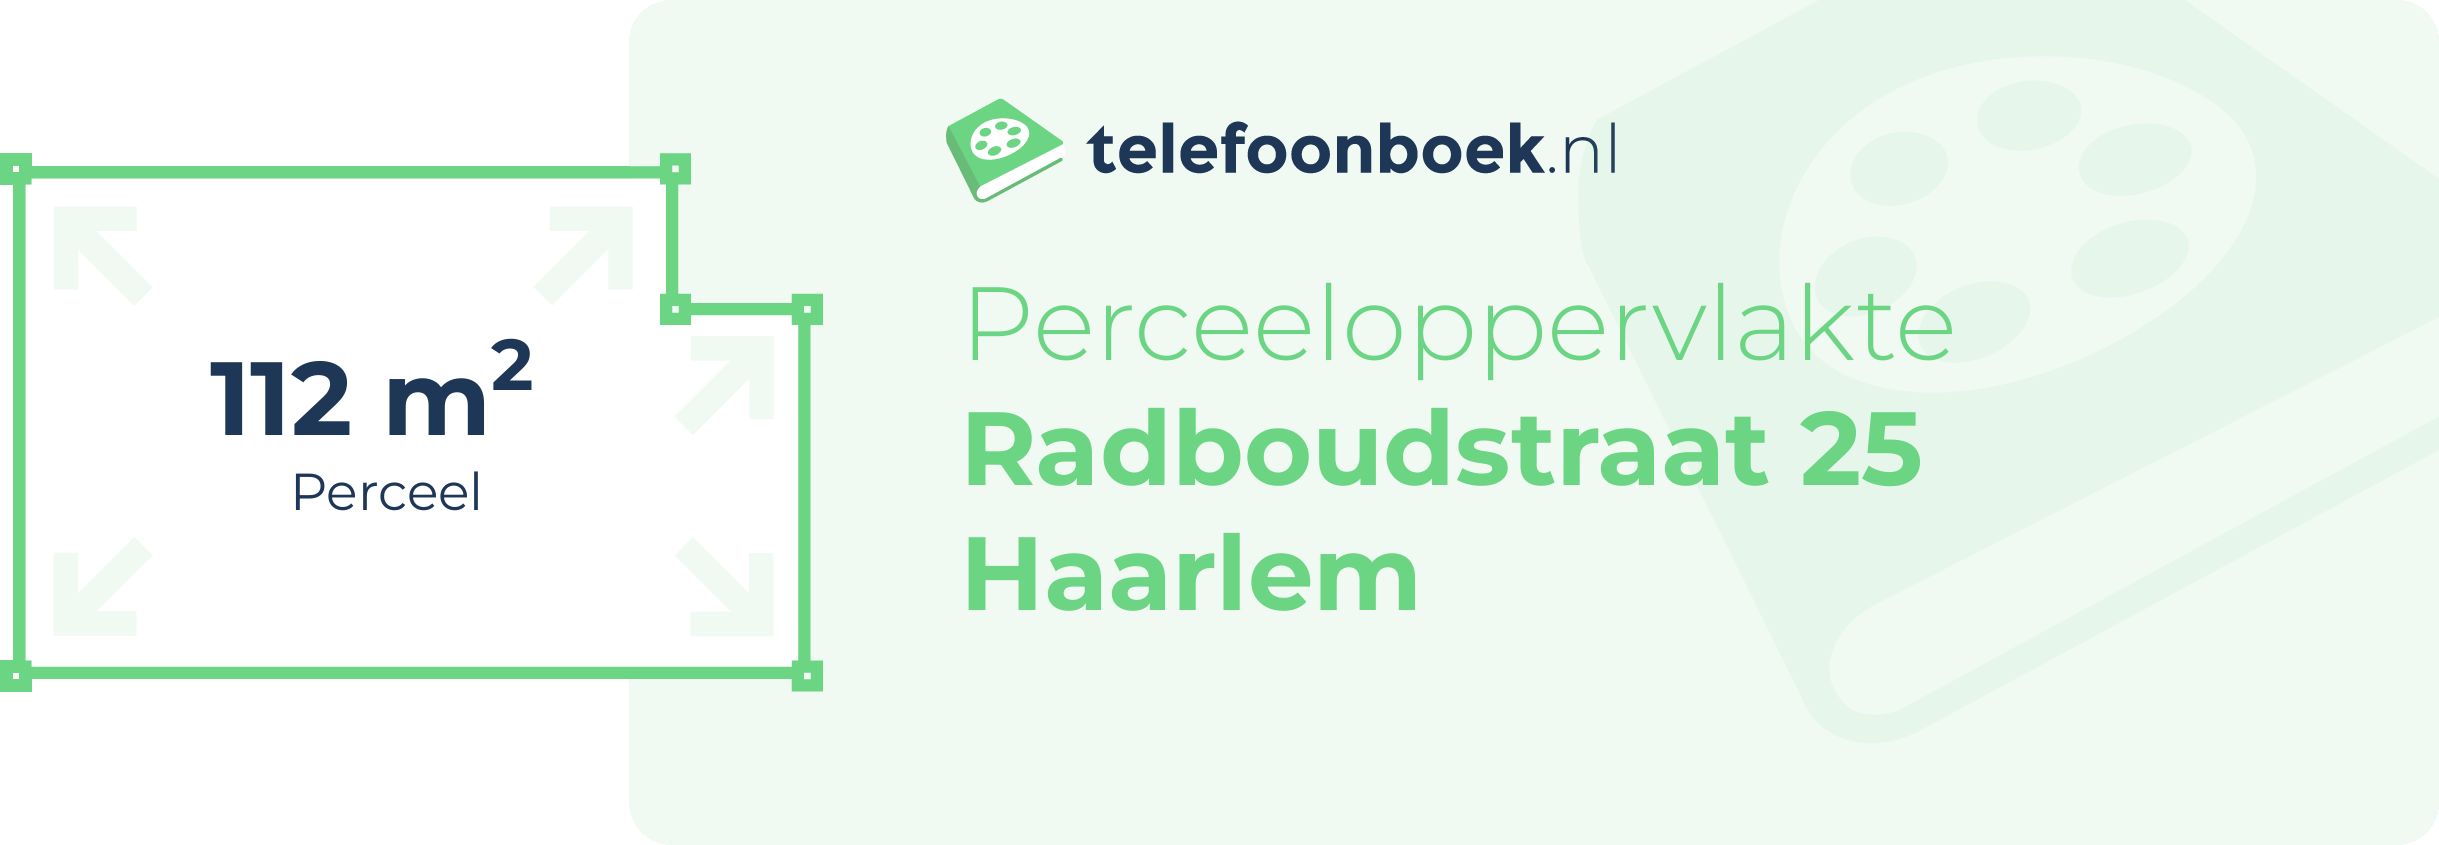 Perceeloppervlakte Radboudstraat 25 Haarlem